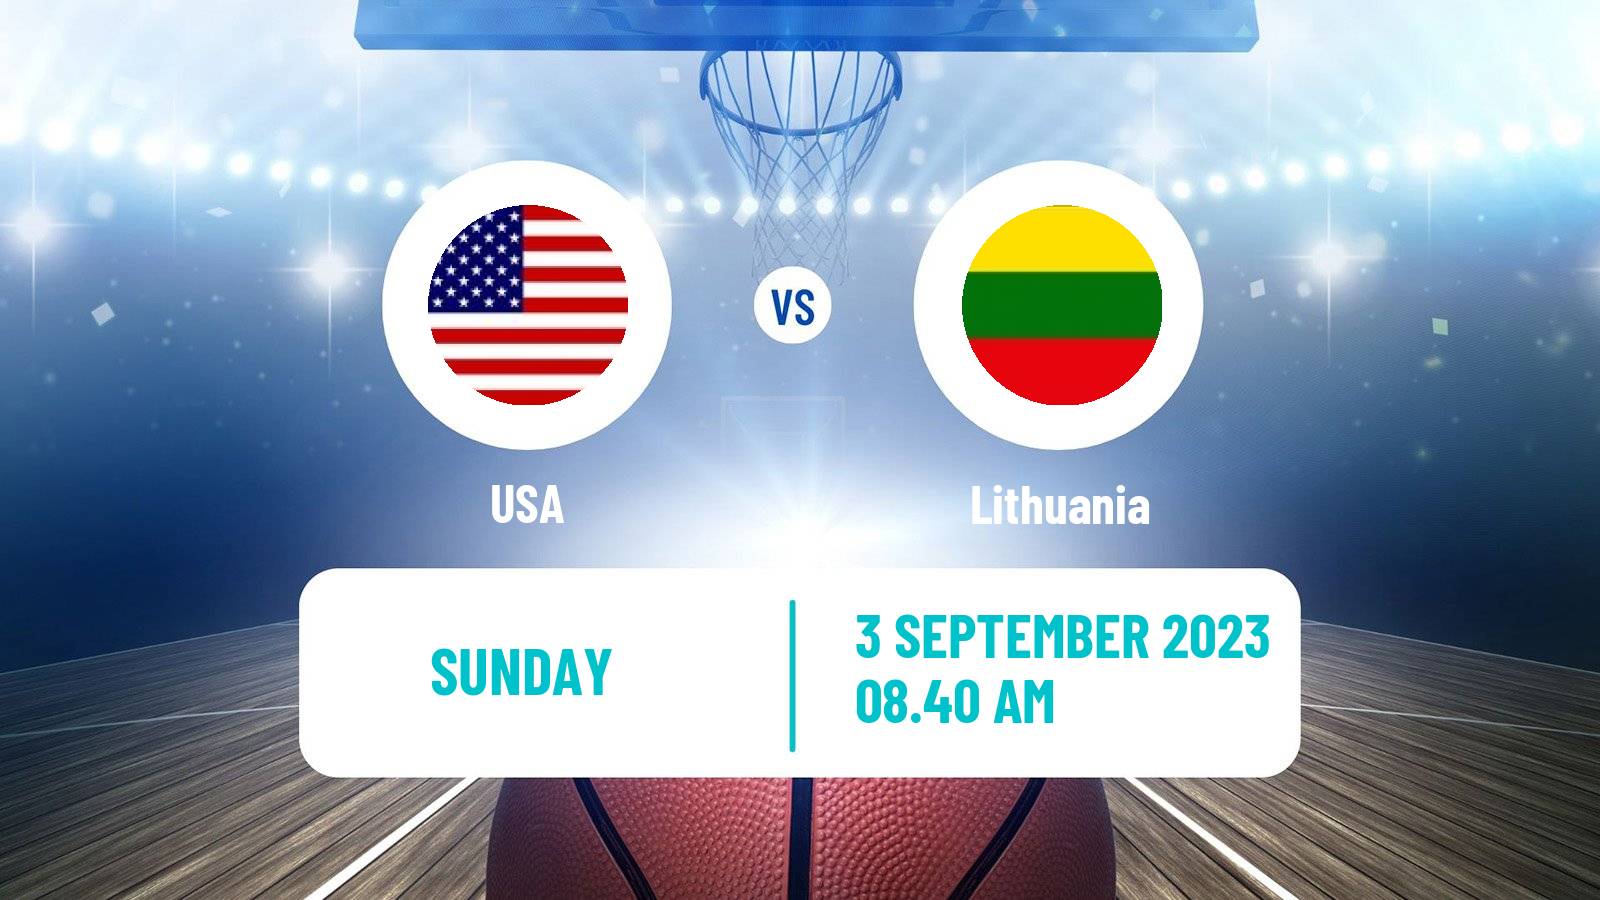 Basketball World Championship Basketball USA - Lithuania